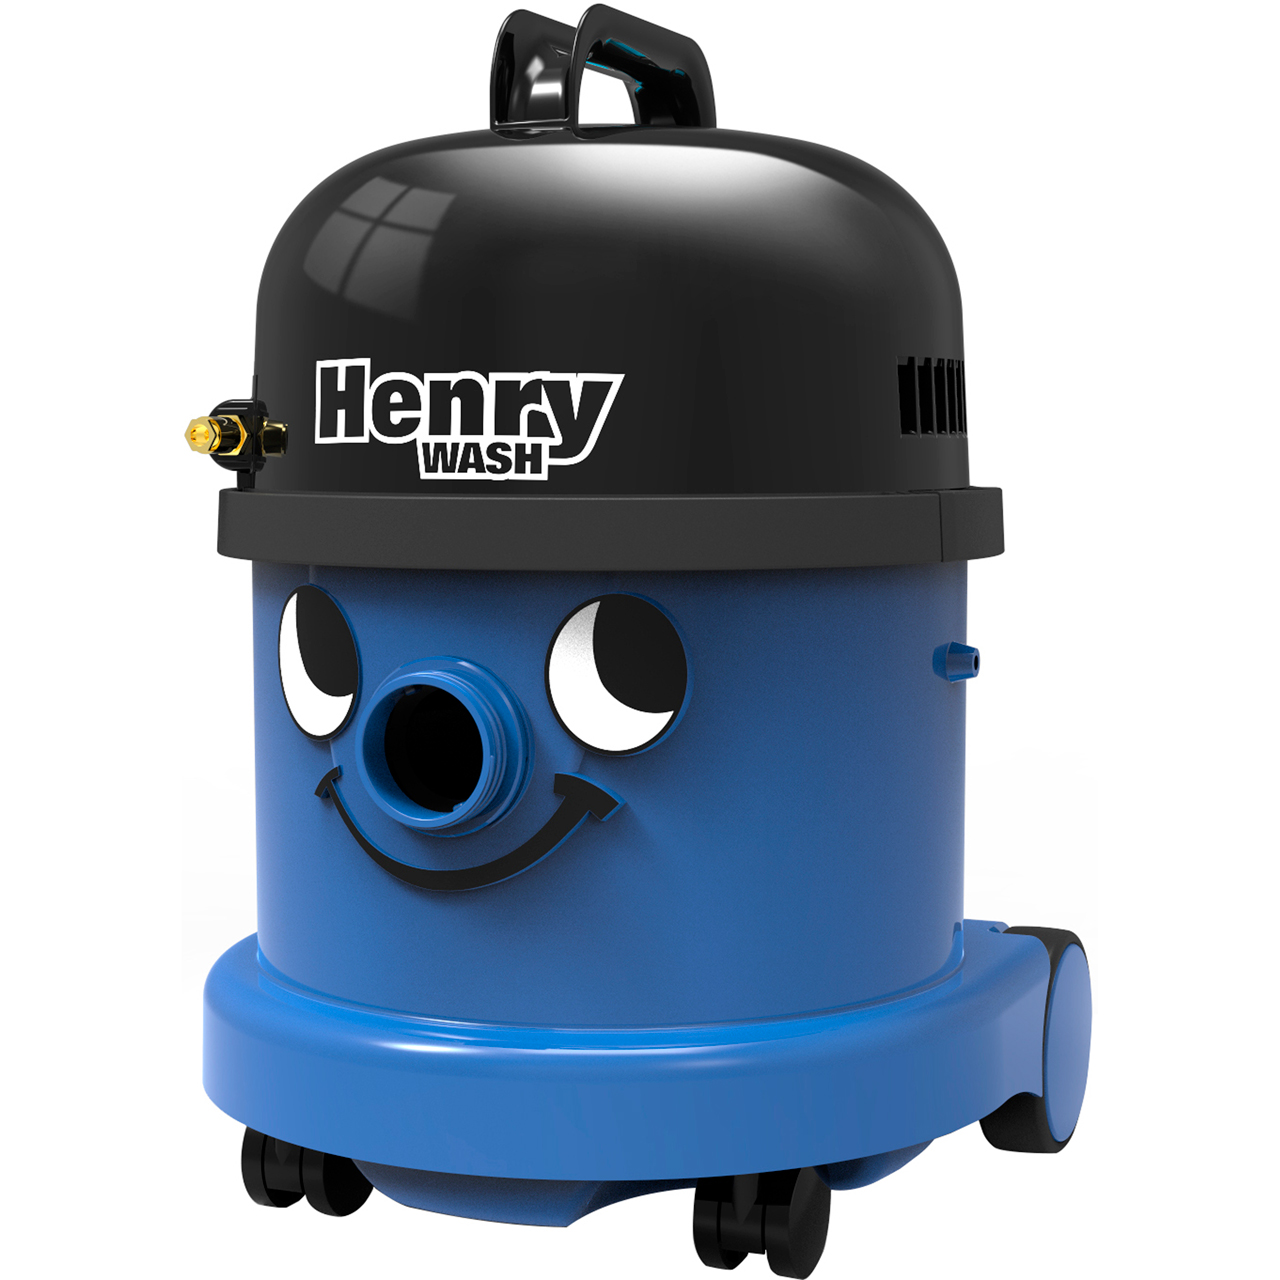 Henry Wash HVW 370-2 Carpet Cleaner Review